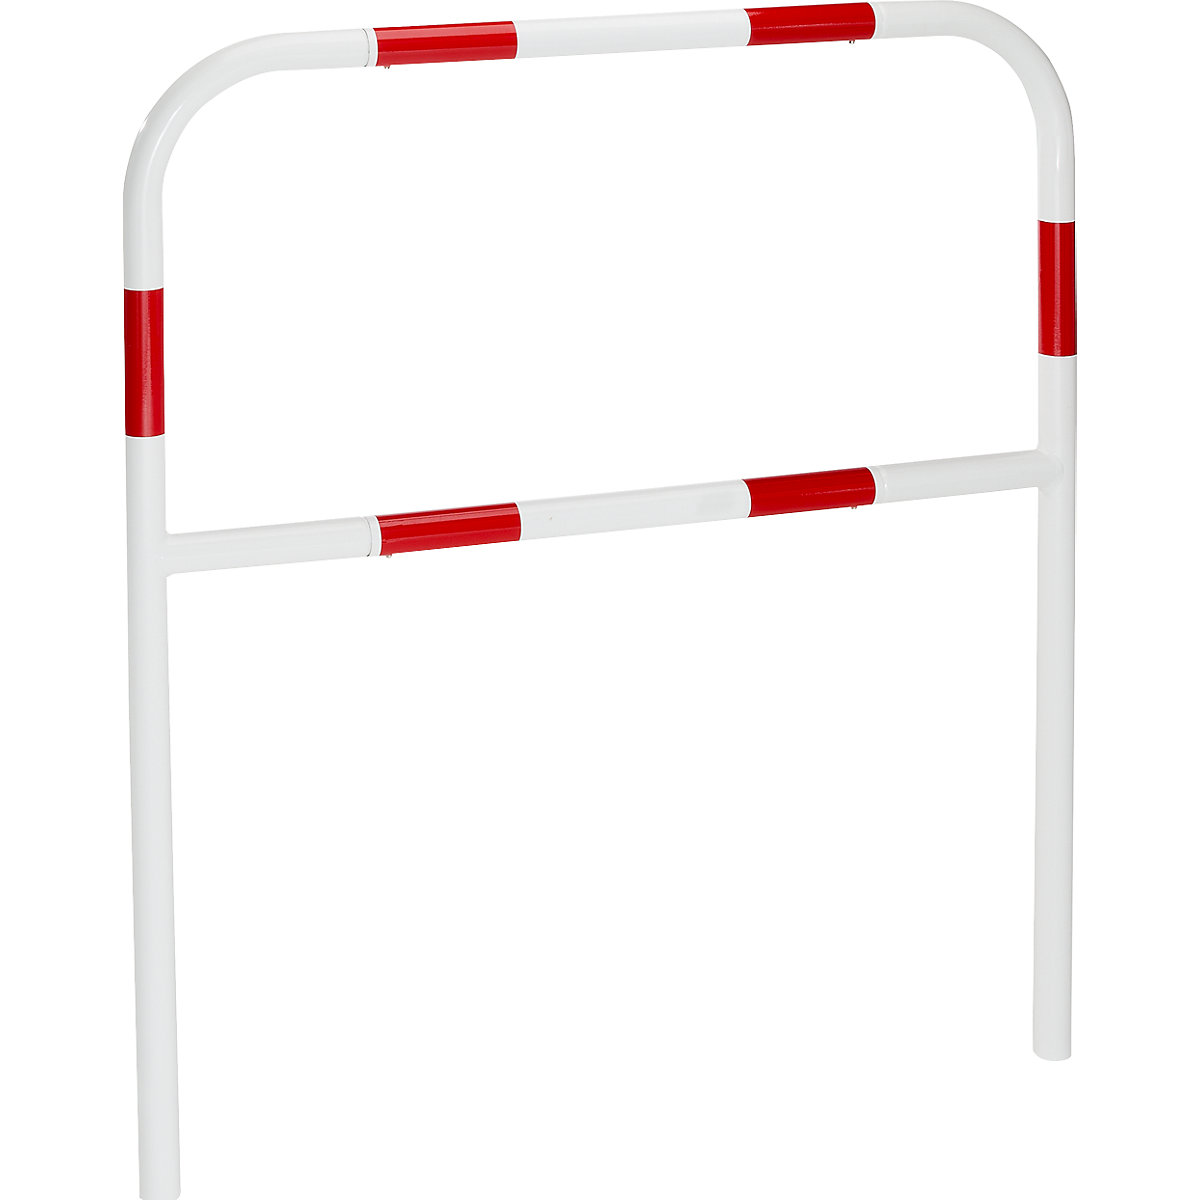 Sicherheitsbügel für Gefahrenzonen, zum Einbetonieren, rot / weiß, Breite 1000 mm